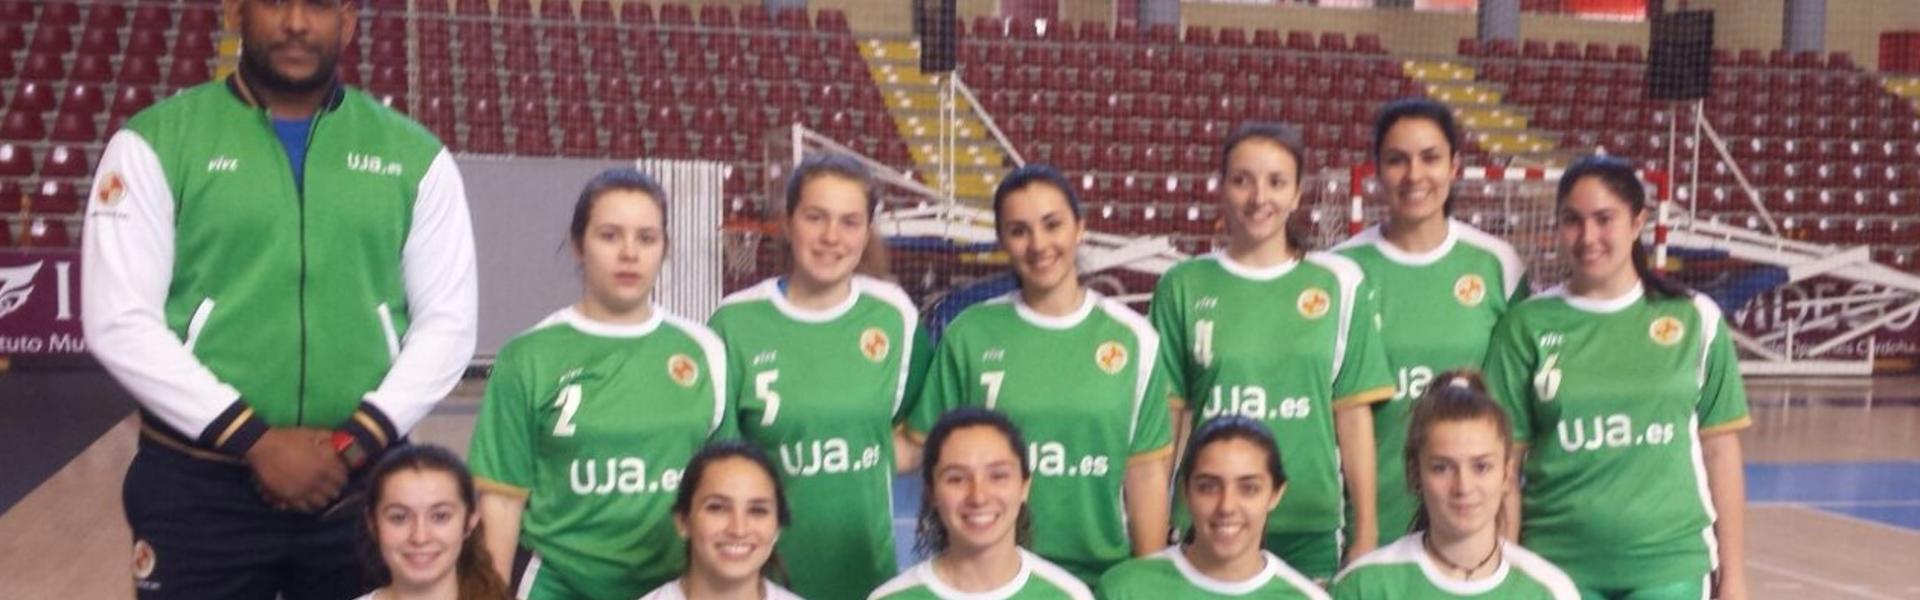 Campeonato de Andalucía Universitario de Voleibol femenino